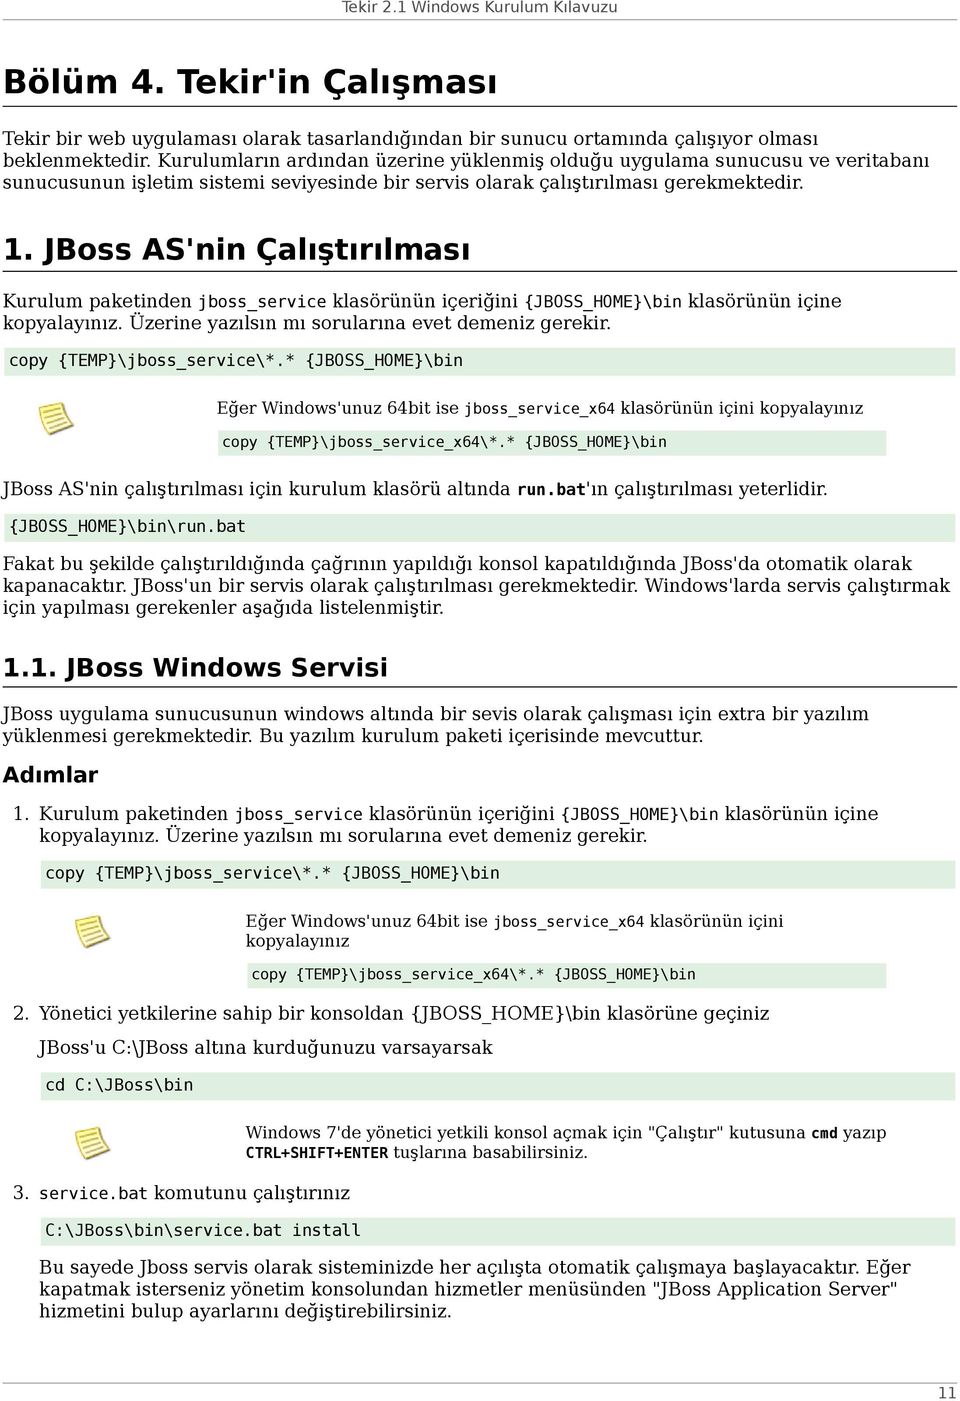 JBoss AS'nin Çalıştırılması Kurulum paketinden jboss_service klasörünün içeriğini {JBOSS_HOME}\bin klasörünün içine kopyalayınız. Üzerine yazılsın mı sorularına evet demeniz gerekir.